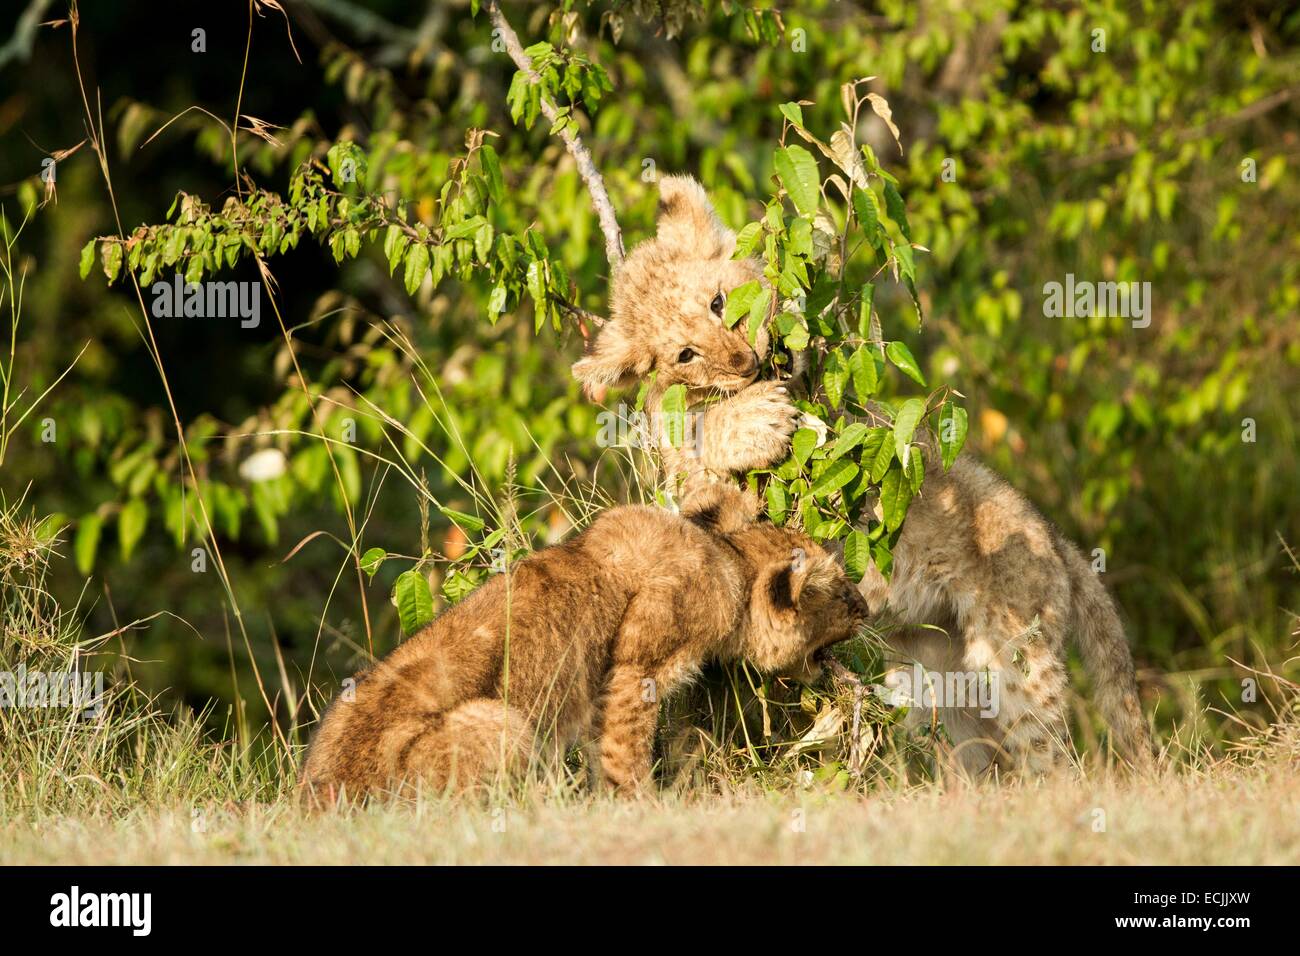 Kenya, Masai-Mara reserva de caza, el león (Panthera leo), Cachorros jugando Foto de stock